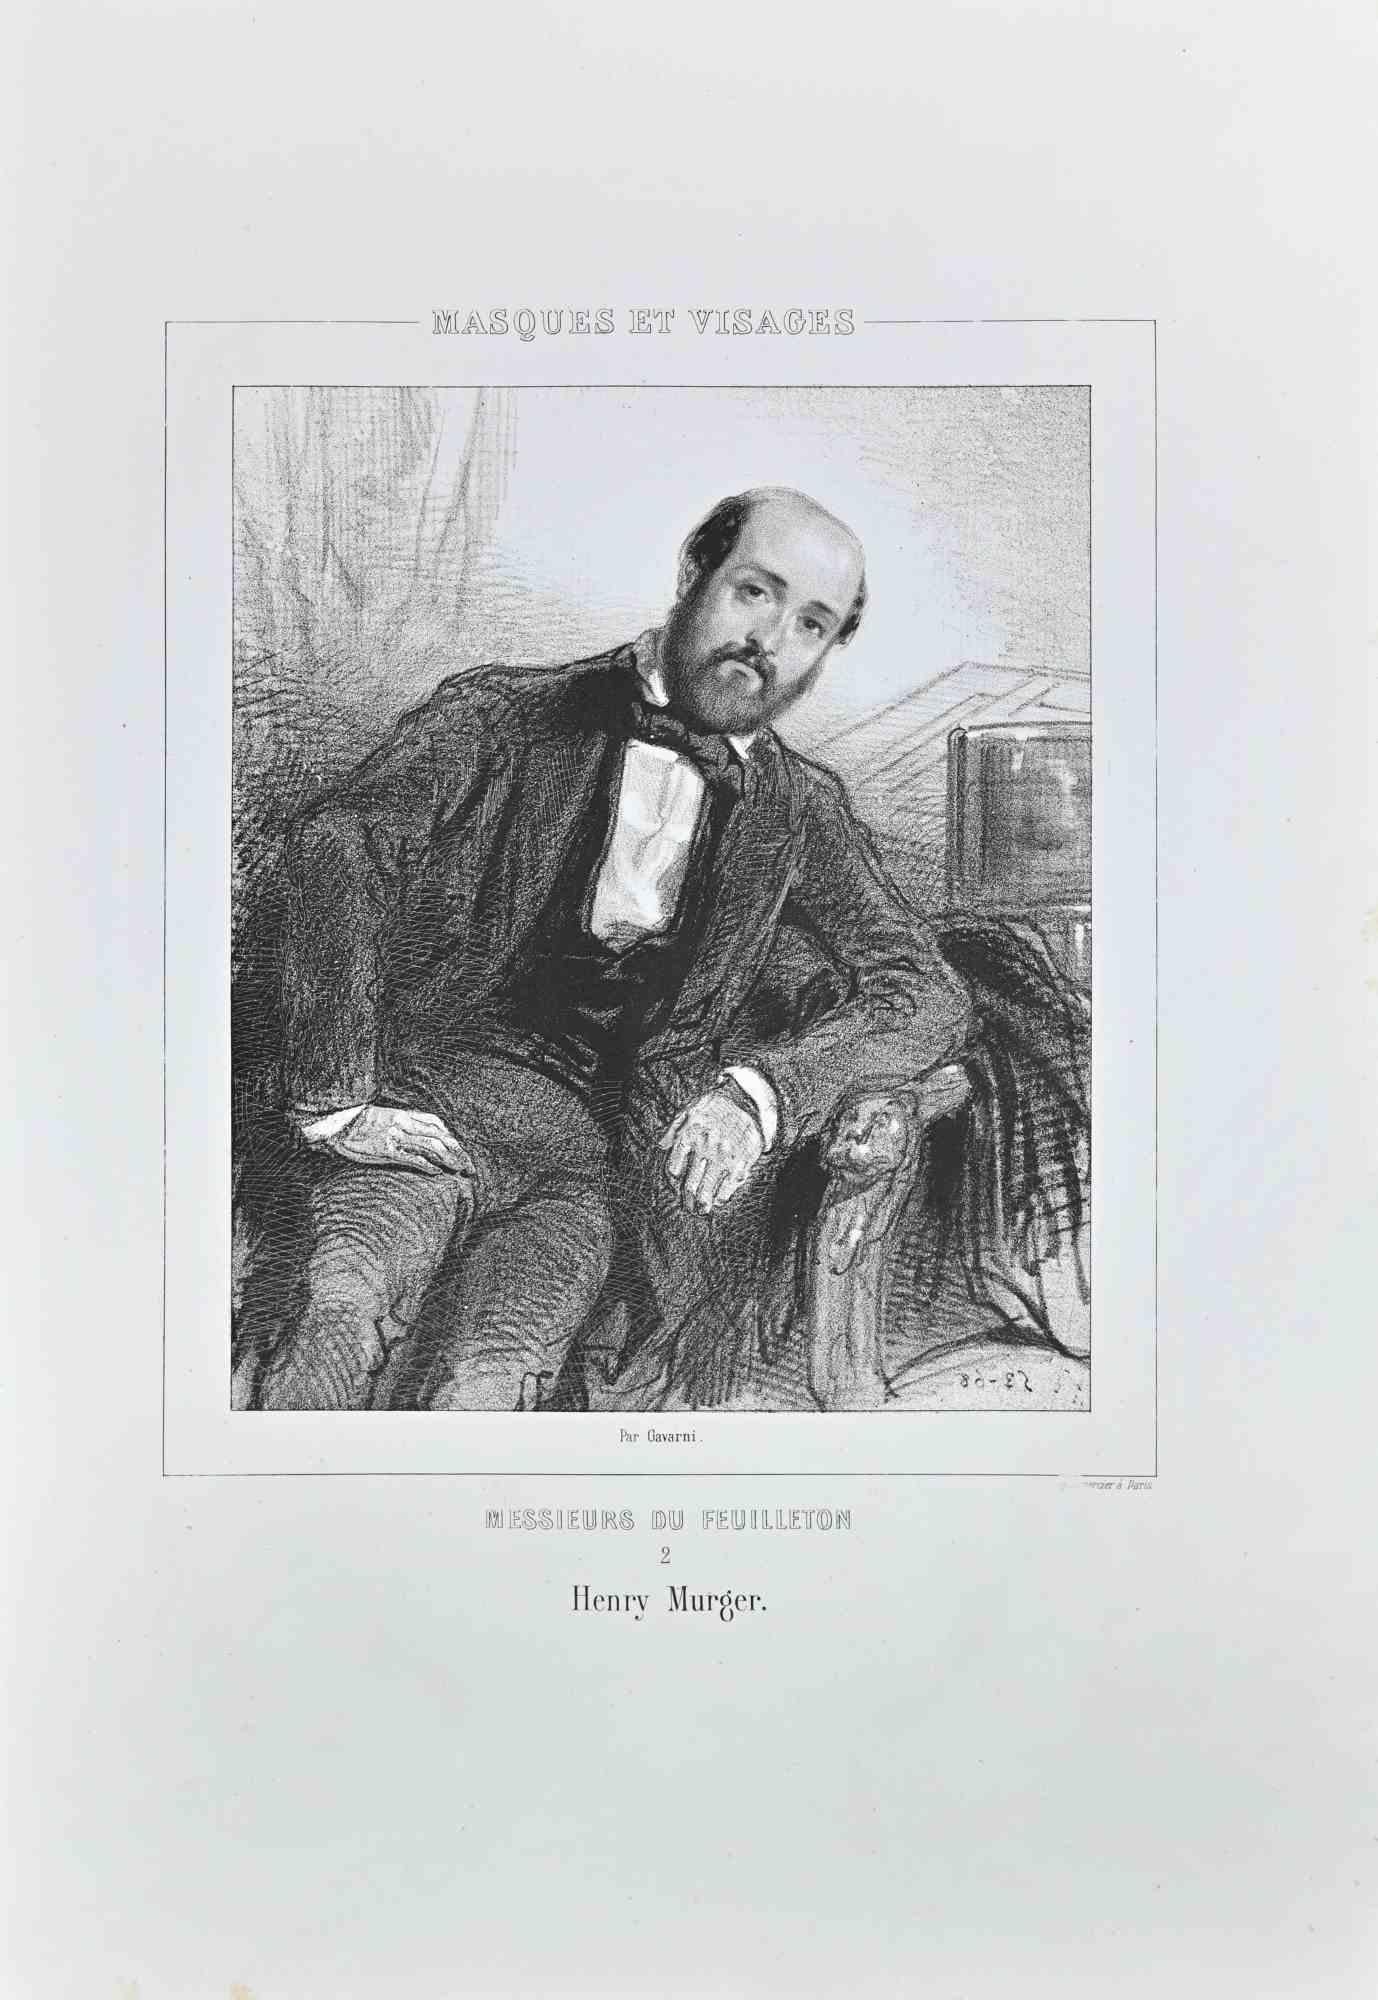 Henry Murger ist eine Lithographie auf elfenbeinfarbenem Papier, die von dem französischen Zeichner Paul Gavarni (alias Guillaume Sulpice Chevalier Gavarni, 1804-1866) Mitte des 19.

Aus der Serie der "Masques et Visages". Auf der unteren Seite